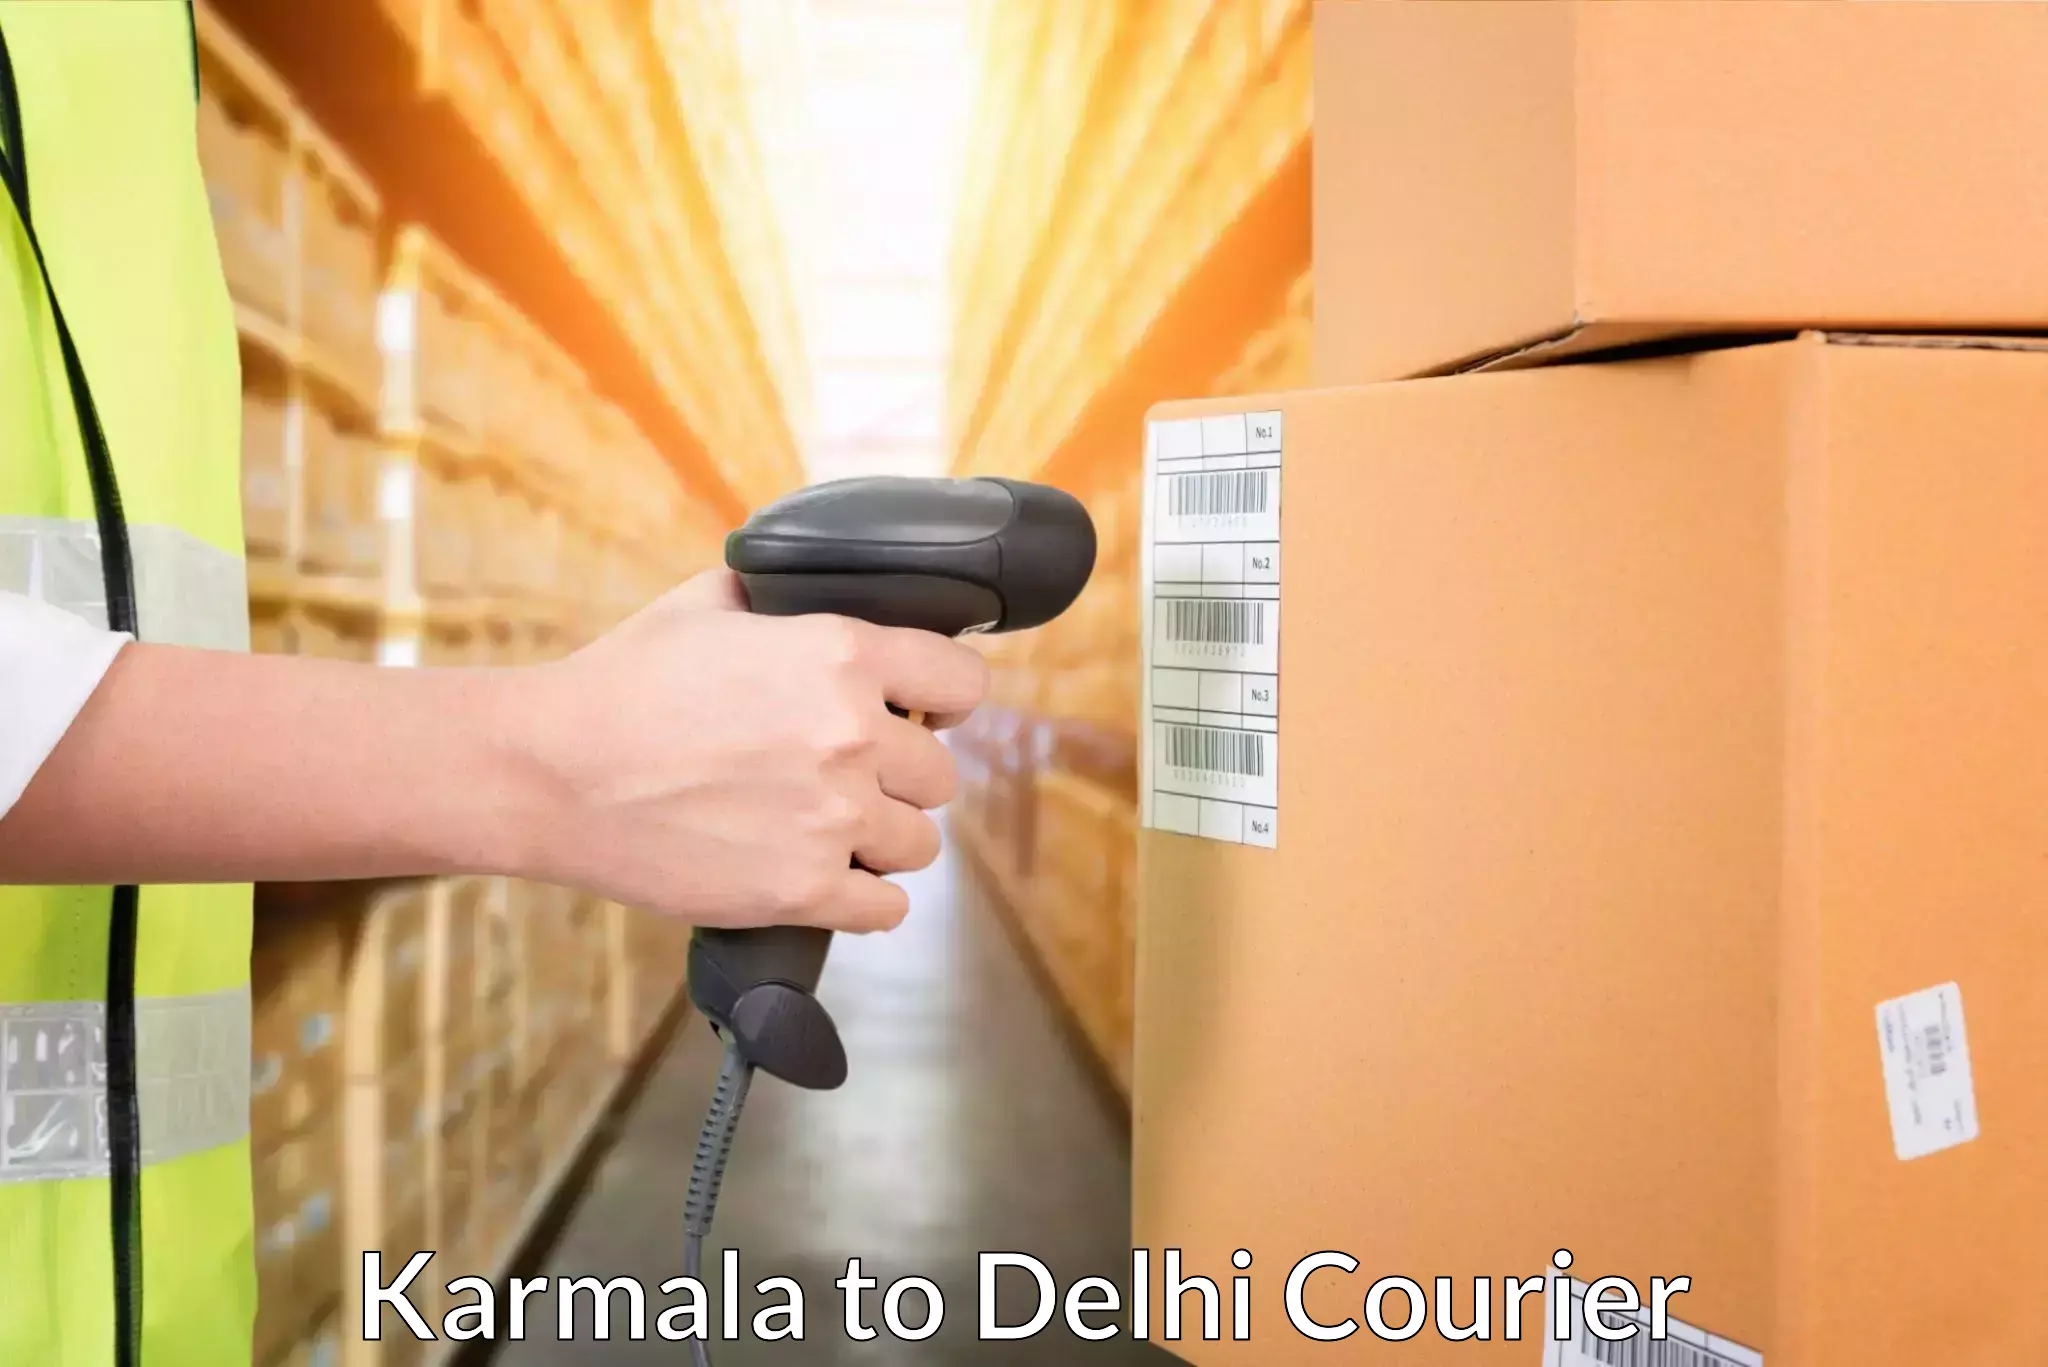 Flexible delivery schedules Karmala to Jamia Millia Islamia New Delhi